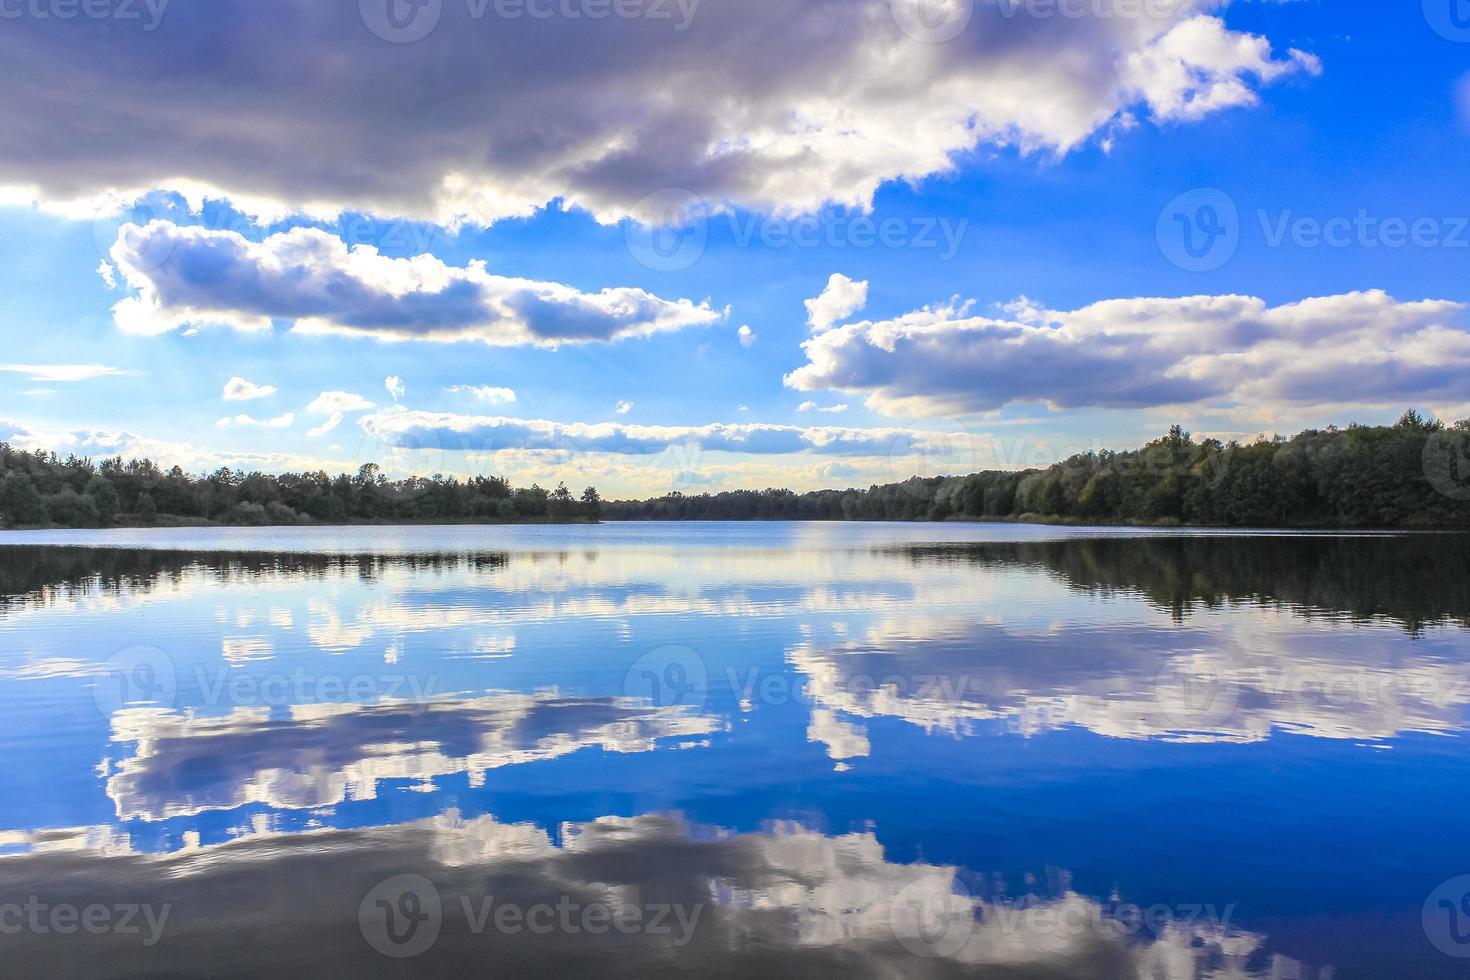 le stoteler de l'allemagne du nord voit l'eau bleue du lac avec la réflexion des nuages. photo